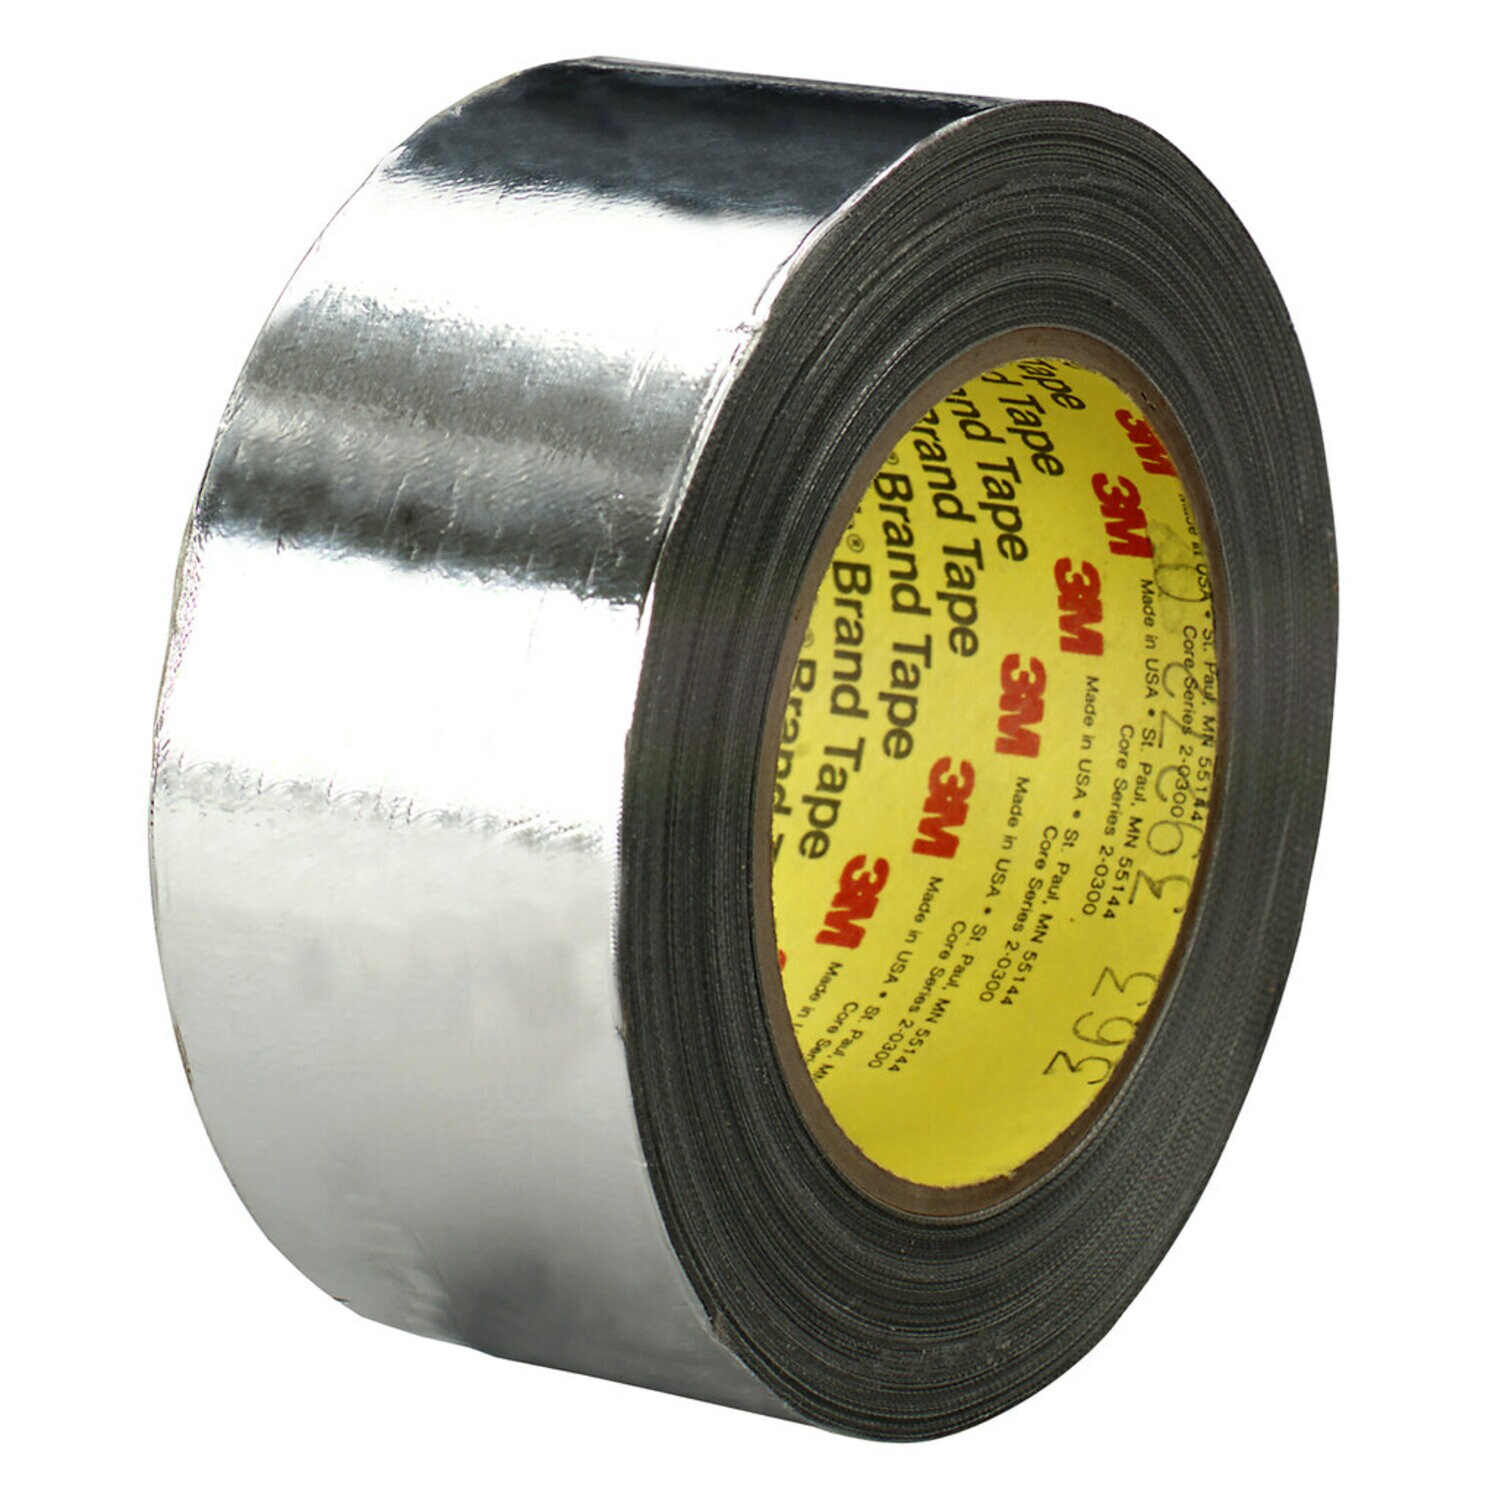 7010375889 - 3M High Temperature Aluminum Foil/Glass Cloth Tape 363L, Silver, 4 1/2
in x 108 yd, 7.3 mil, 8 rolls per case